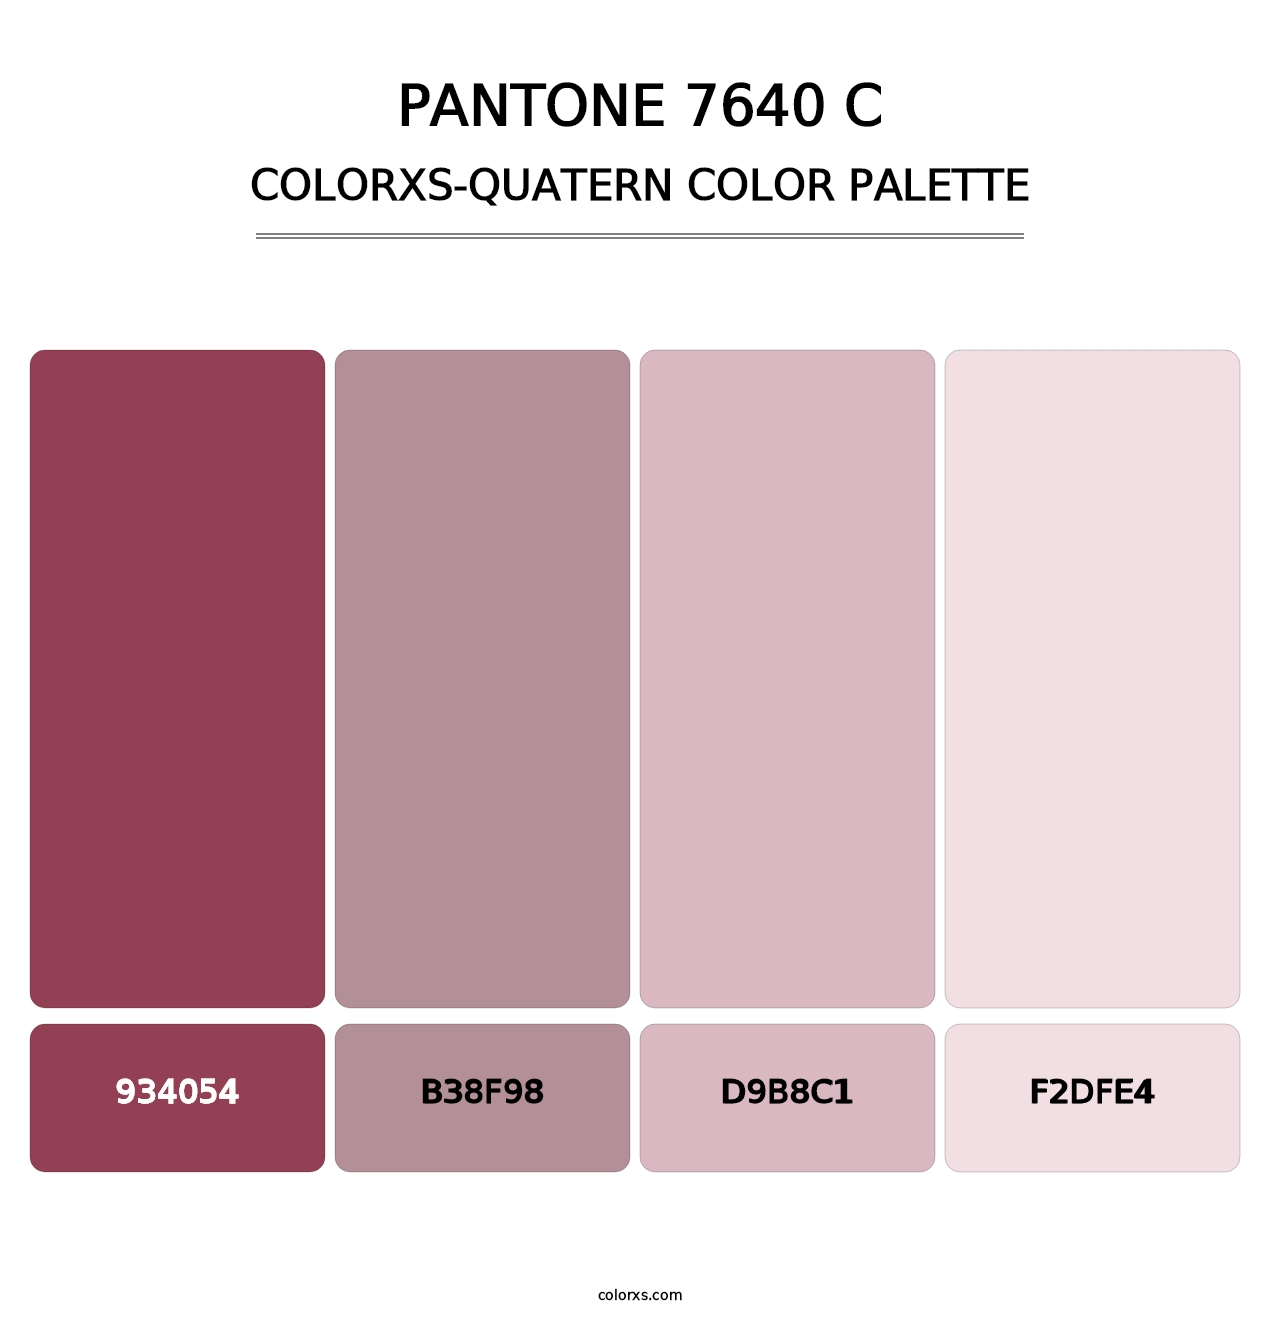 PANTONE 7640 C - Colorxs Quatern Palette